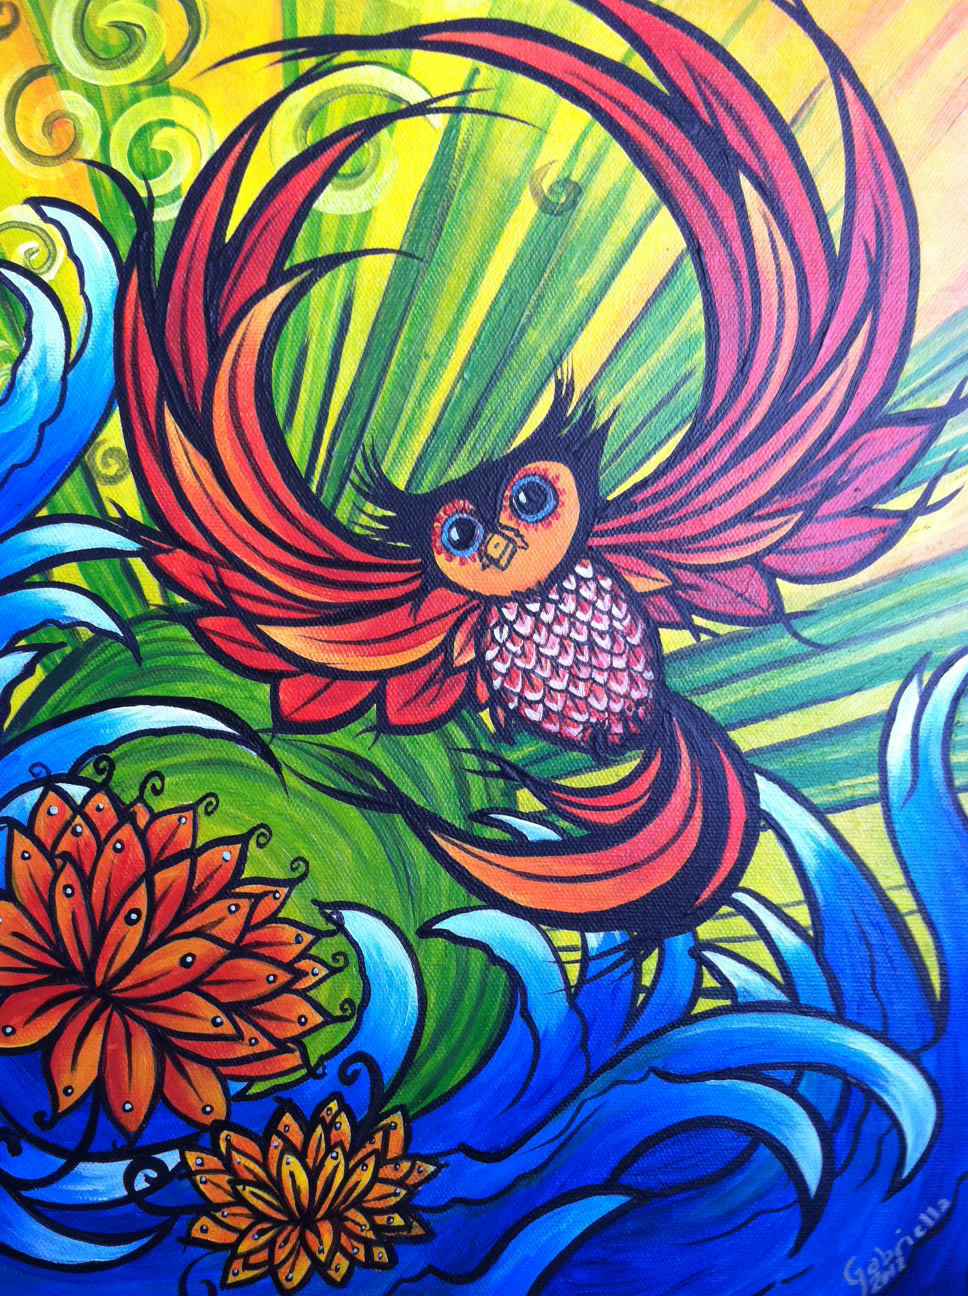 Owl, Acrylic on canvas. Hoot.